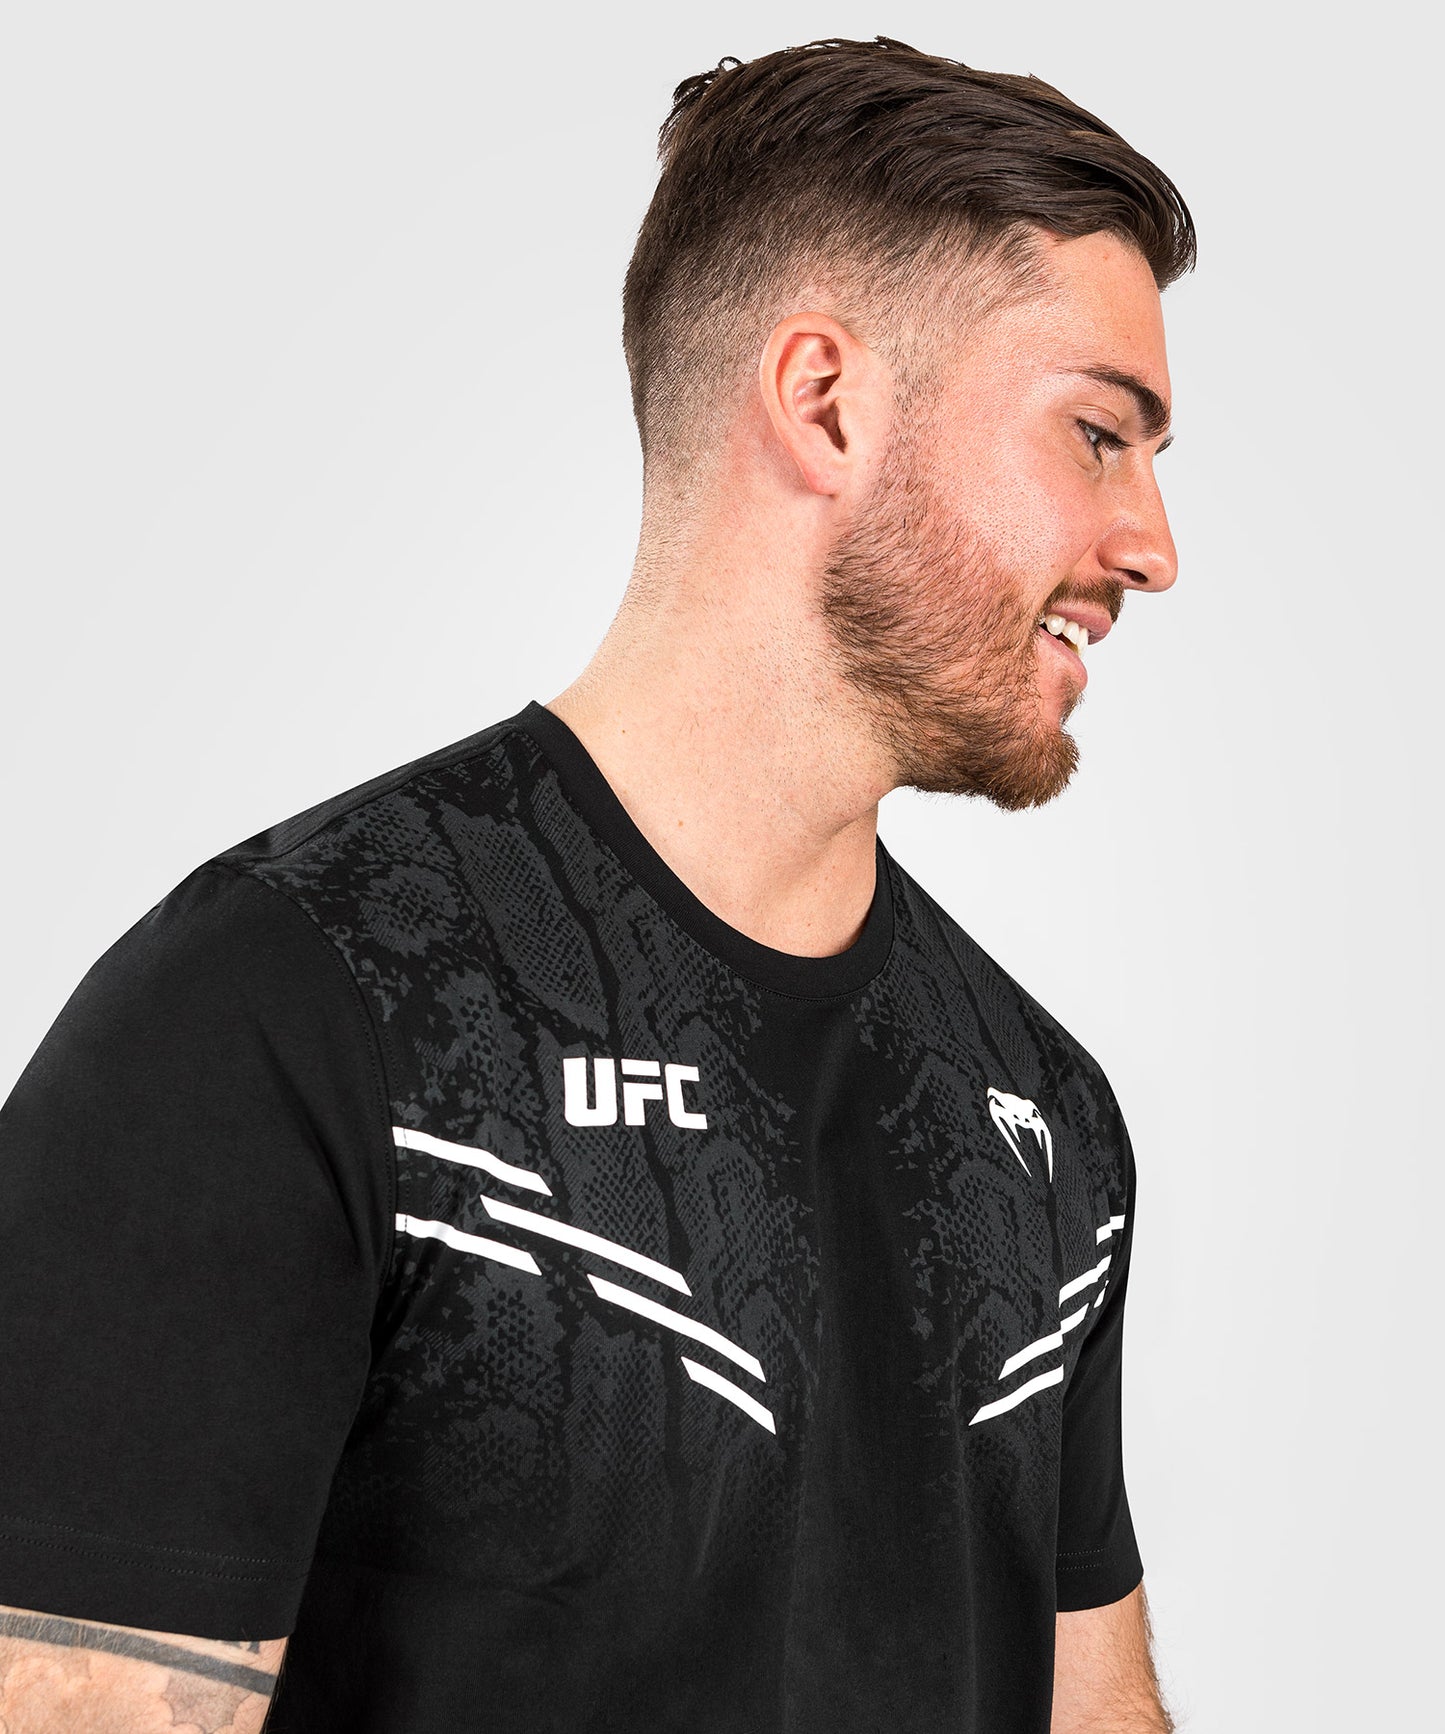 UFC Adrenaline by Venum Replica Camiseta de manga corta para Hombre - Negra